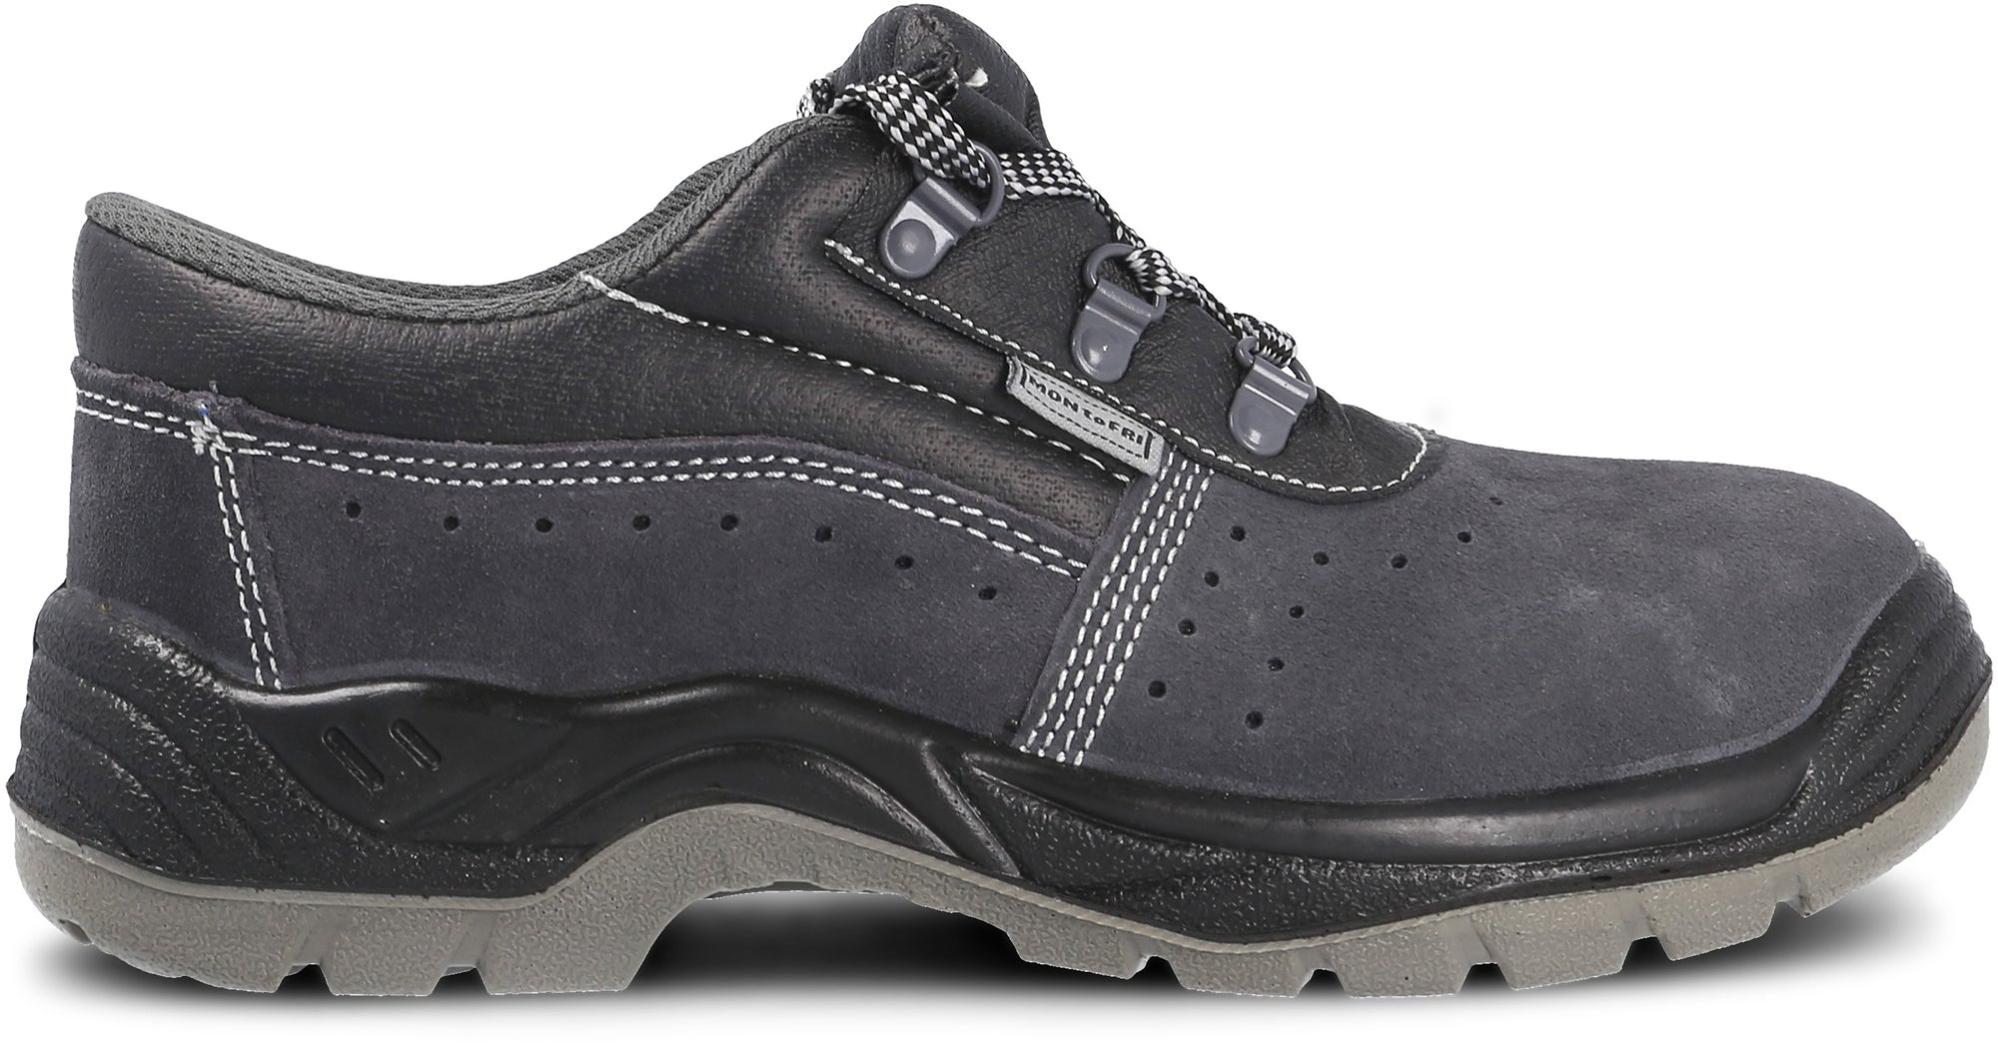 Zapato seguridad paredes, zp1002 serraje gris, s1p talla 42